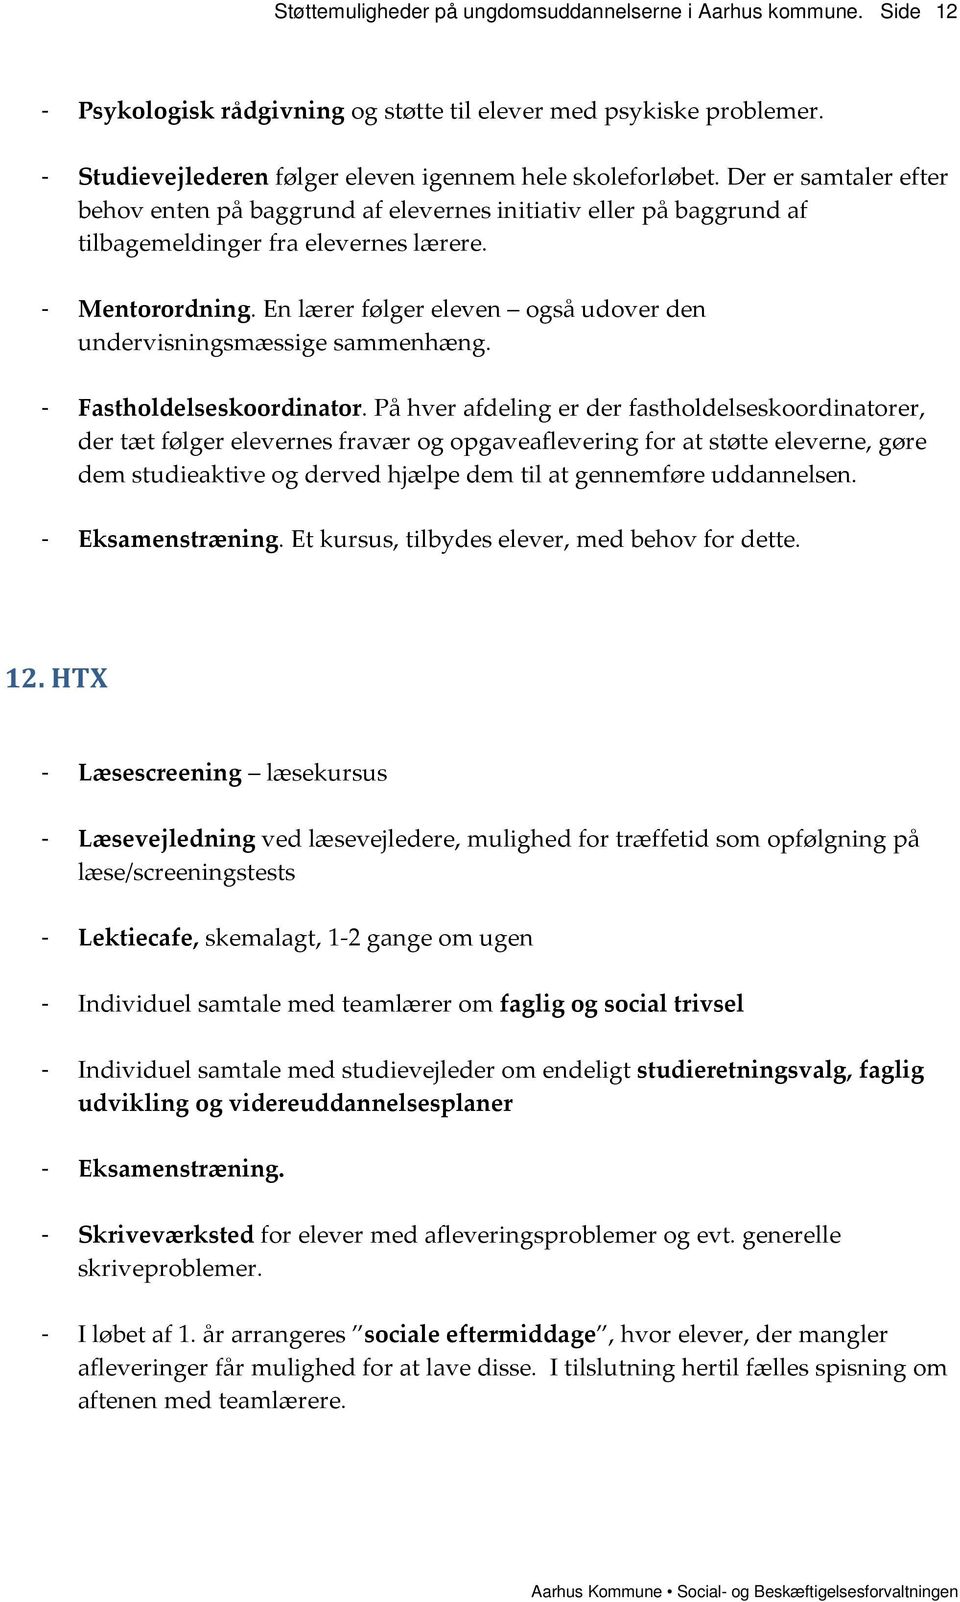 Støttemuligheder på ungdomsuddannelserne i Aarhus Kommune - PDF Gratis  download